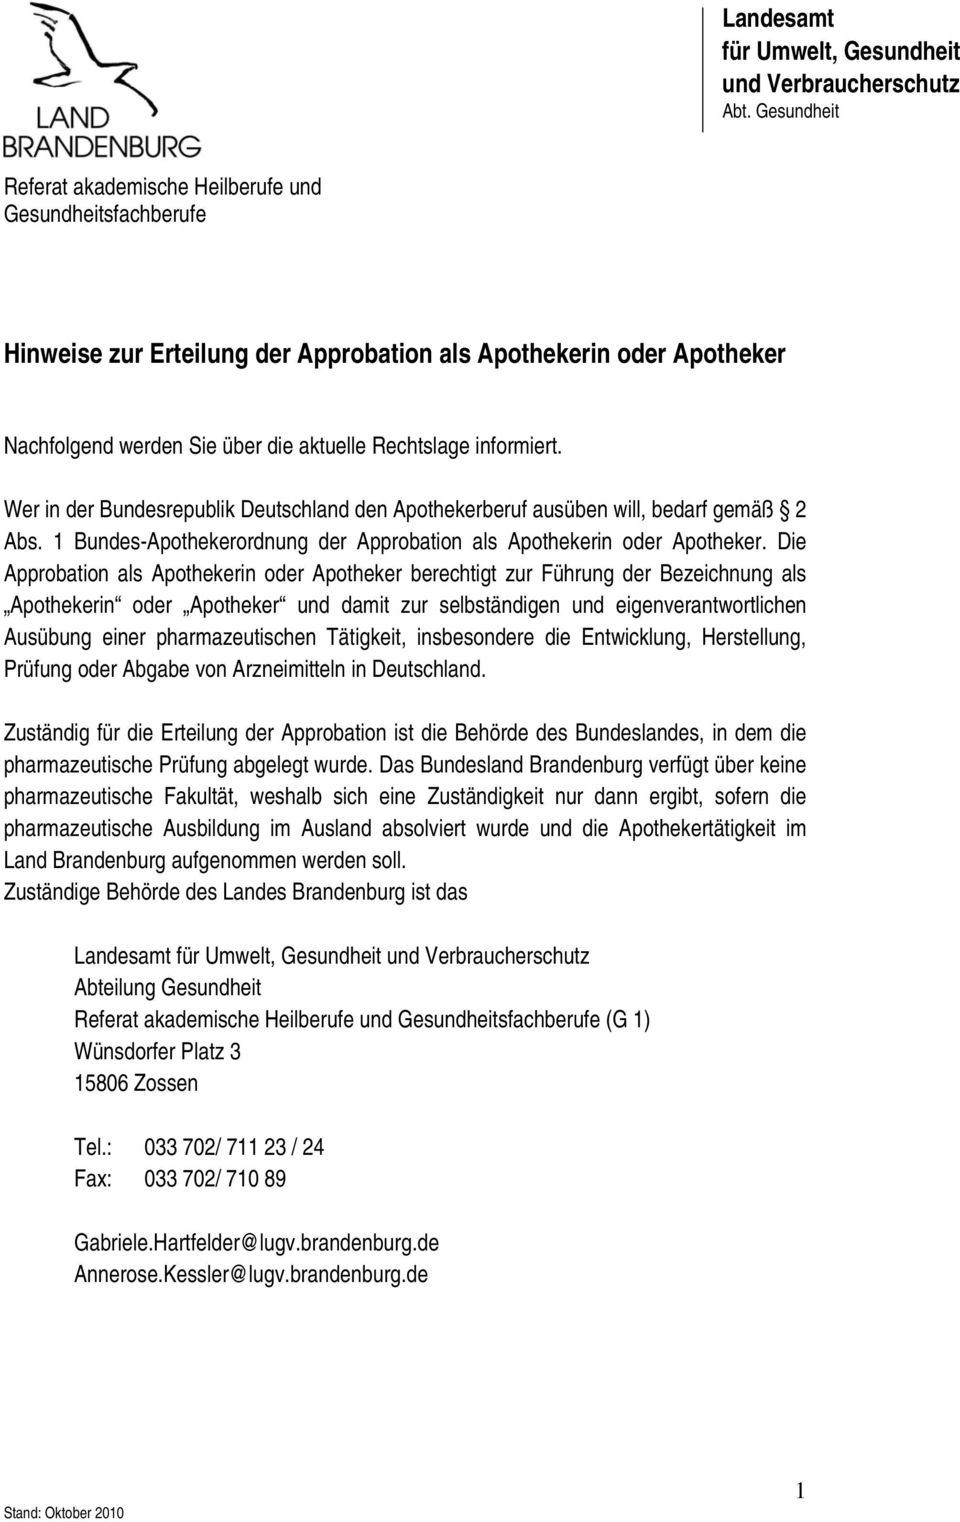 Wer in der Besrepublik Deutschland den Apothekerberuf ausüben will, bedarf gemäß 2 Abs. 1 Bes-Apothekerordnung der Approbation als Apothekerin Apotheker.